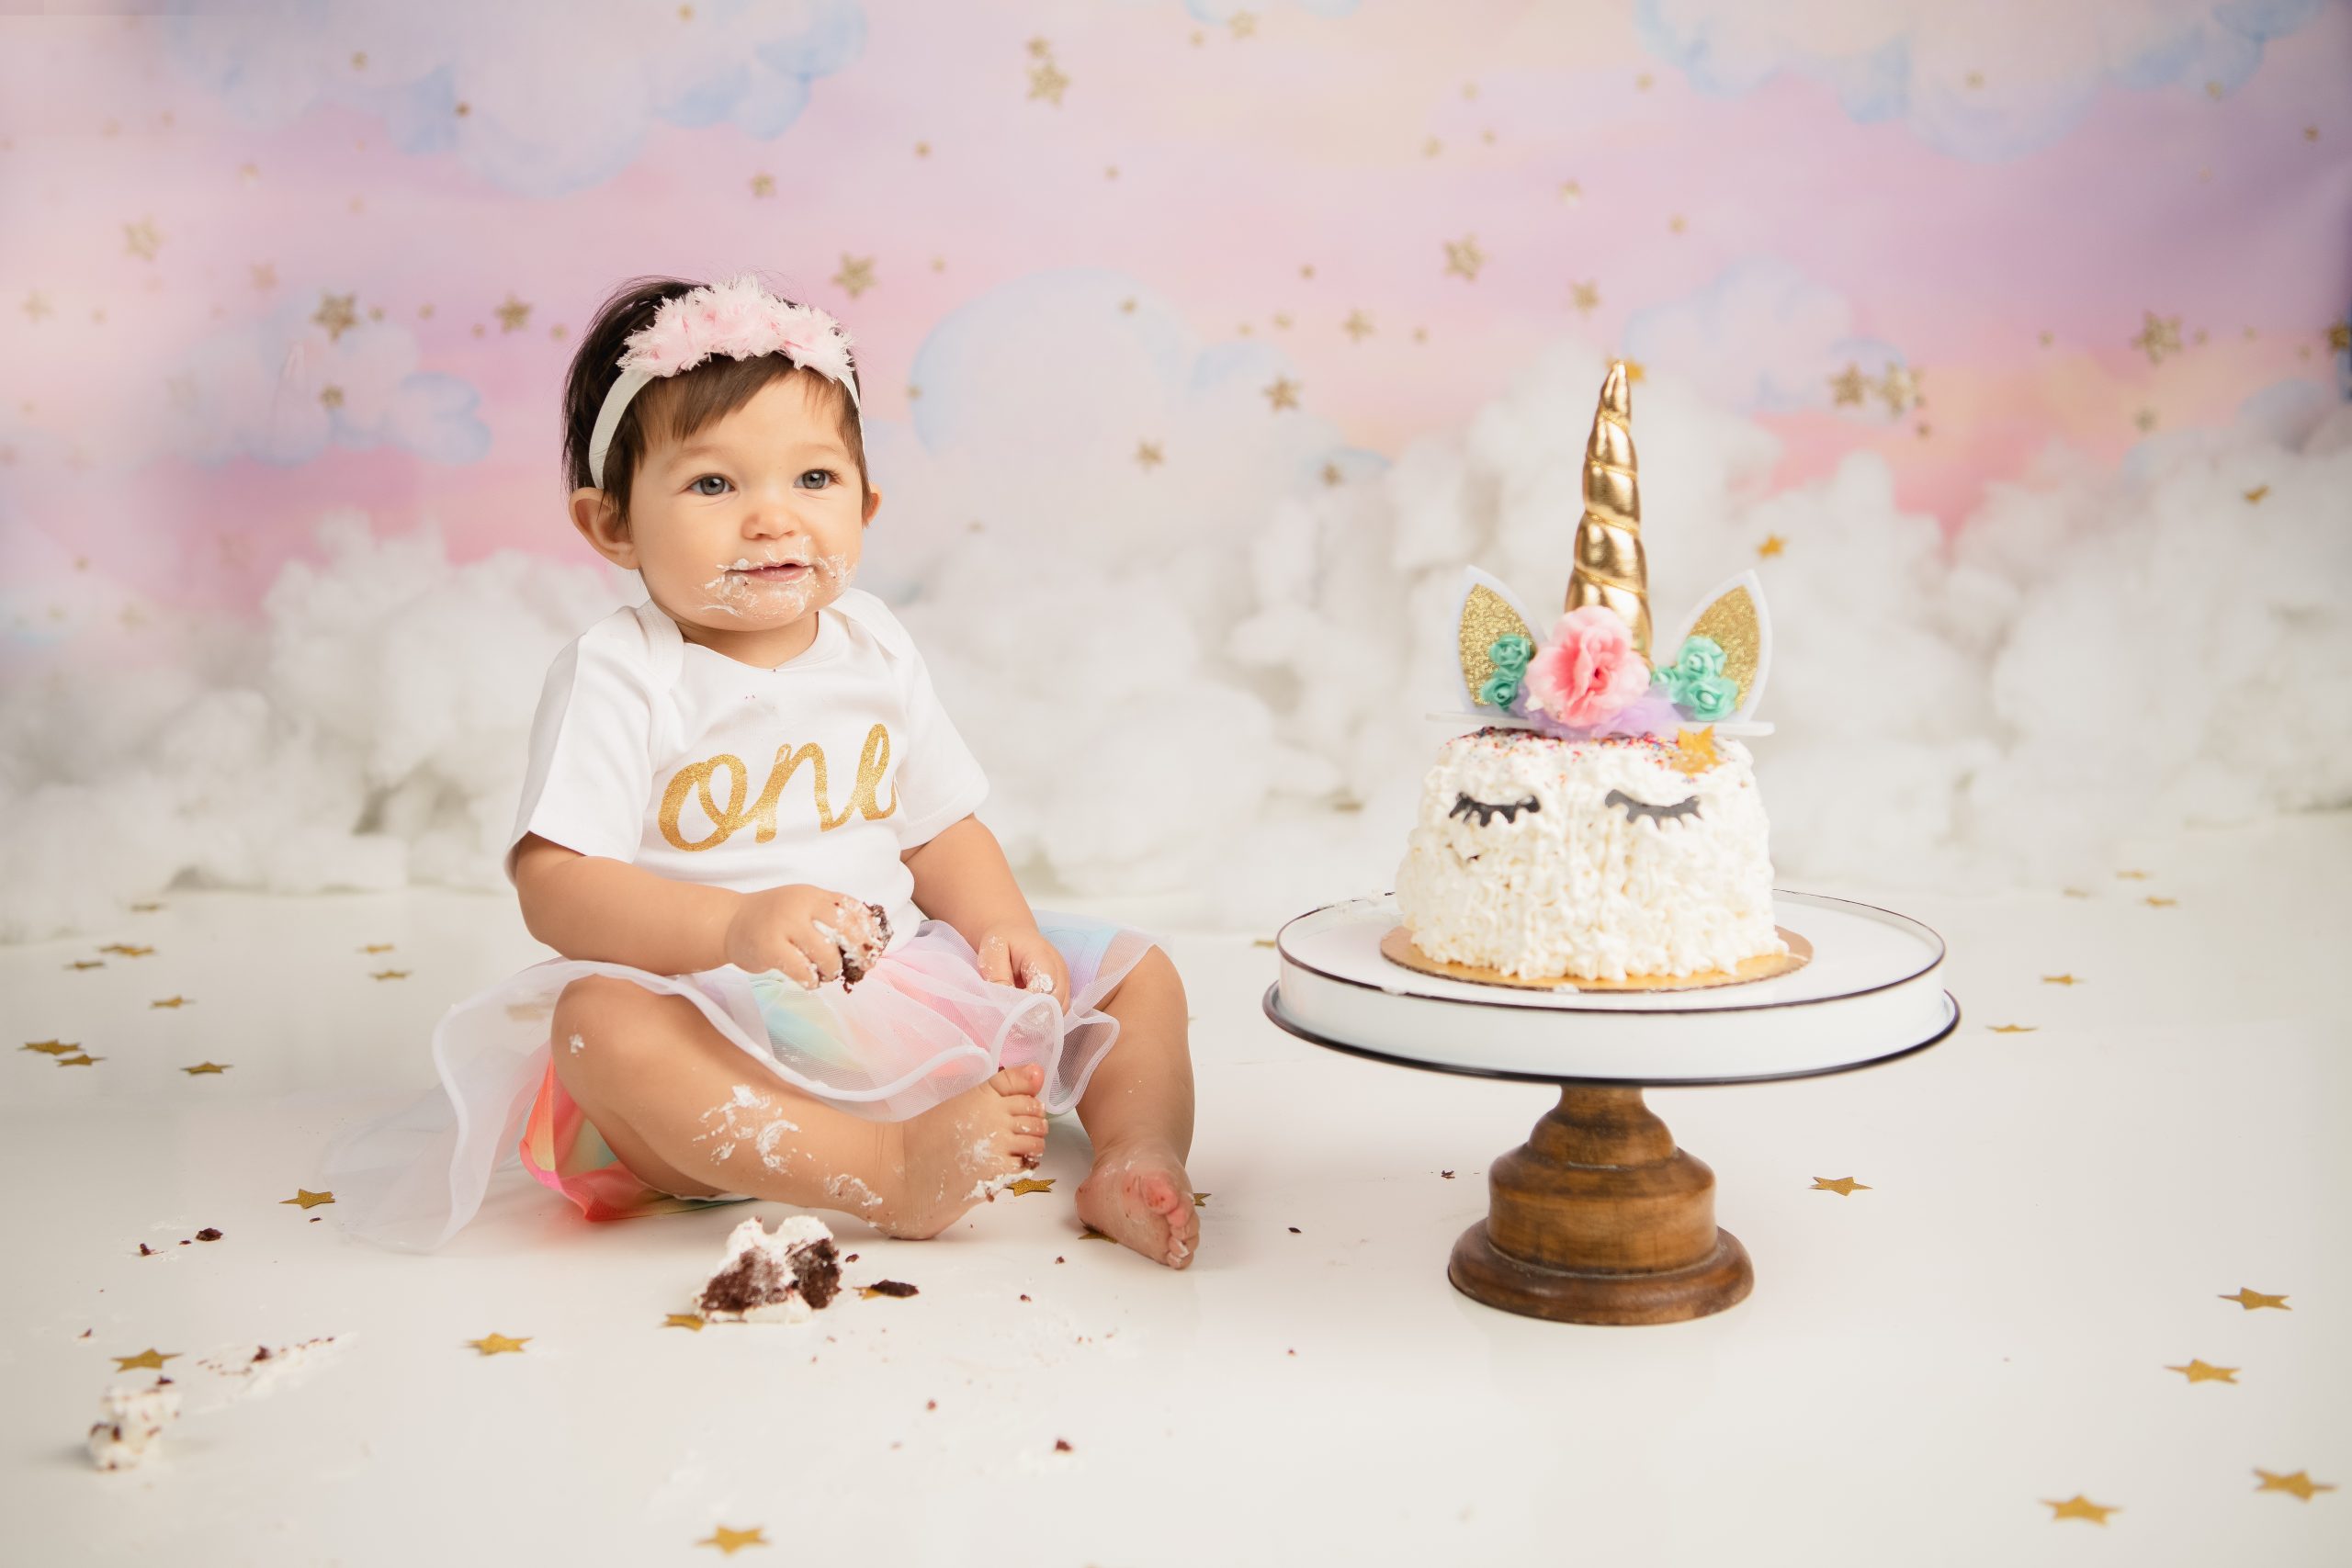 Kailene Jones Cake Smash 1005 scaled - Cake Smash - 1st Birthday